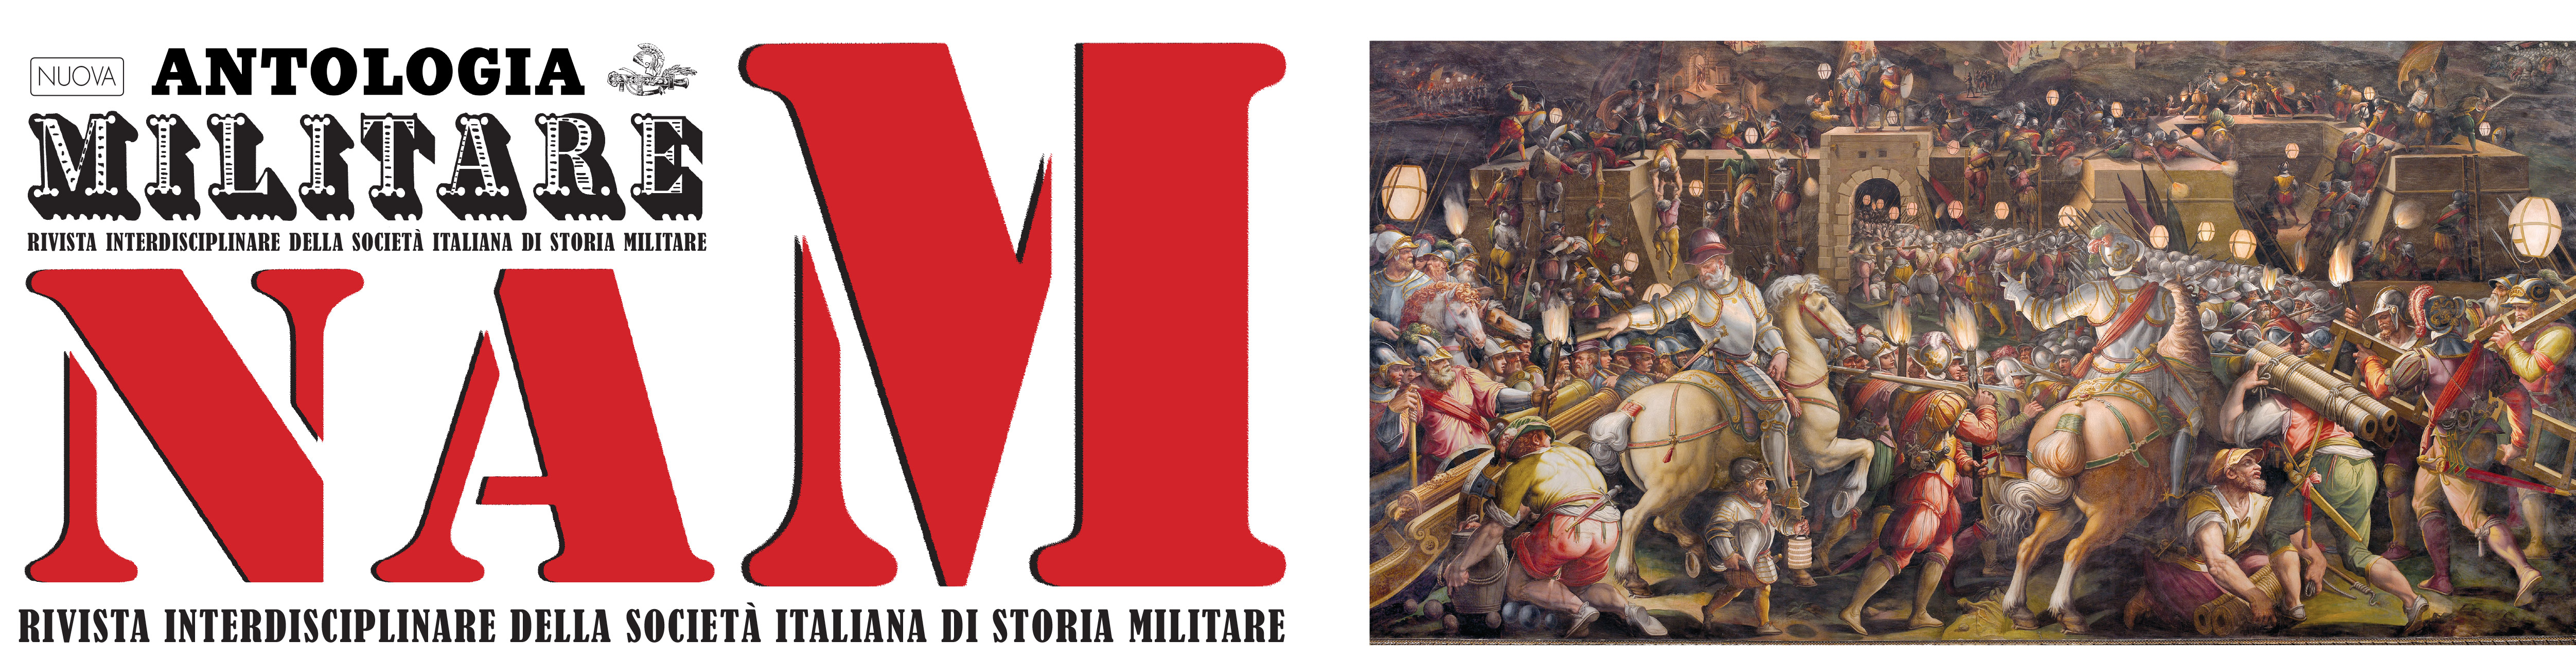 PDF) NAM fascicolo n. 6, Anno 2, 2021 Storia militare antica (2021)